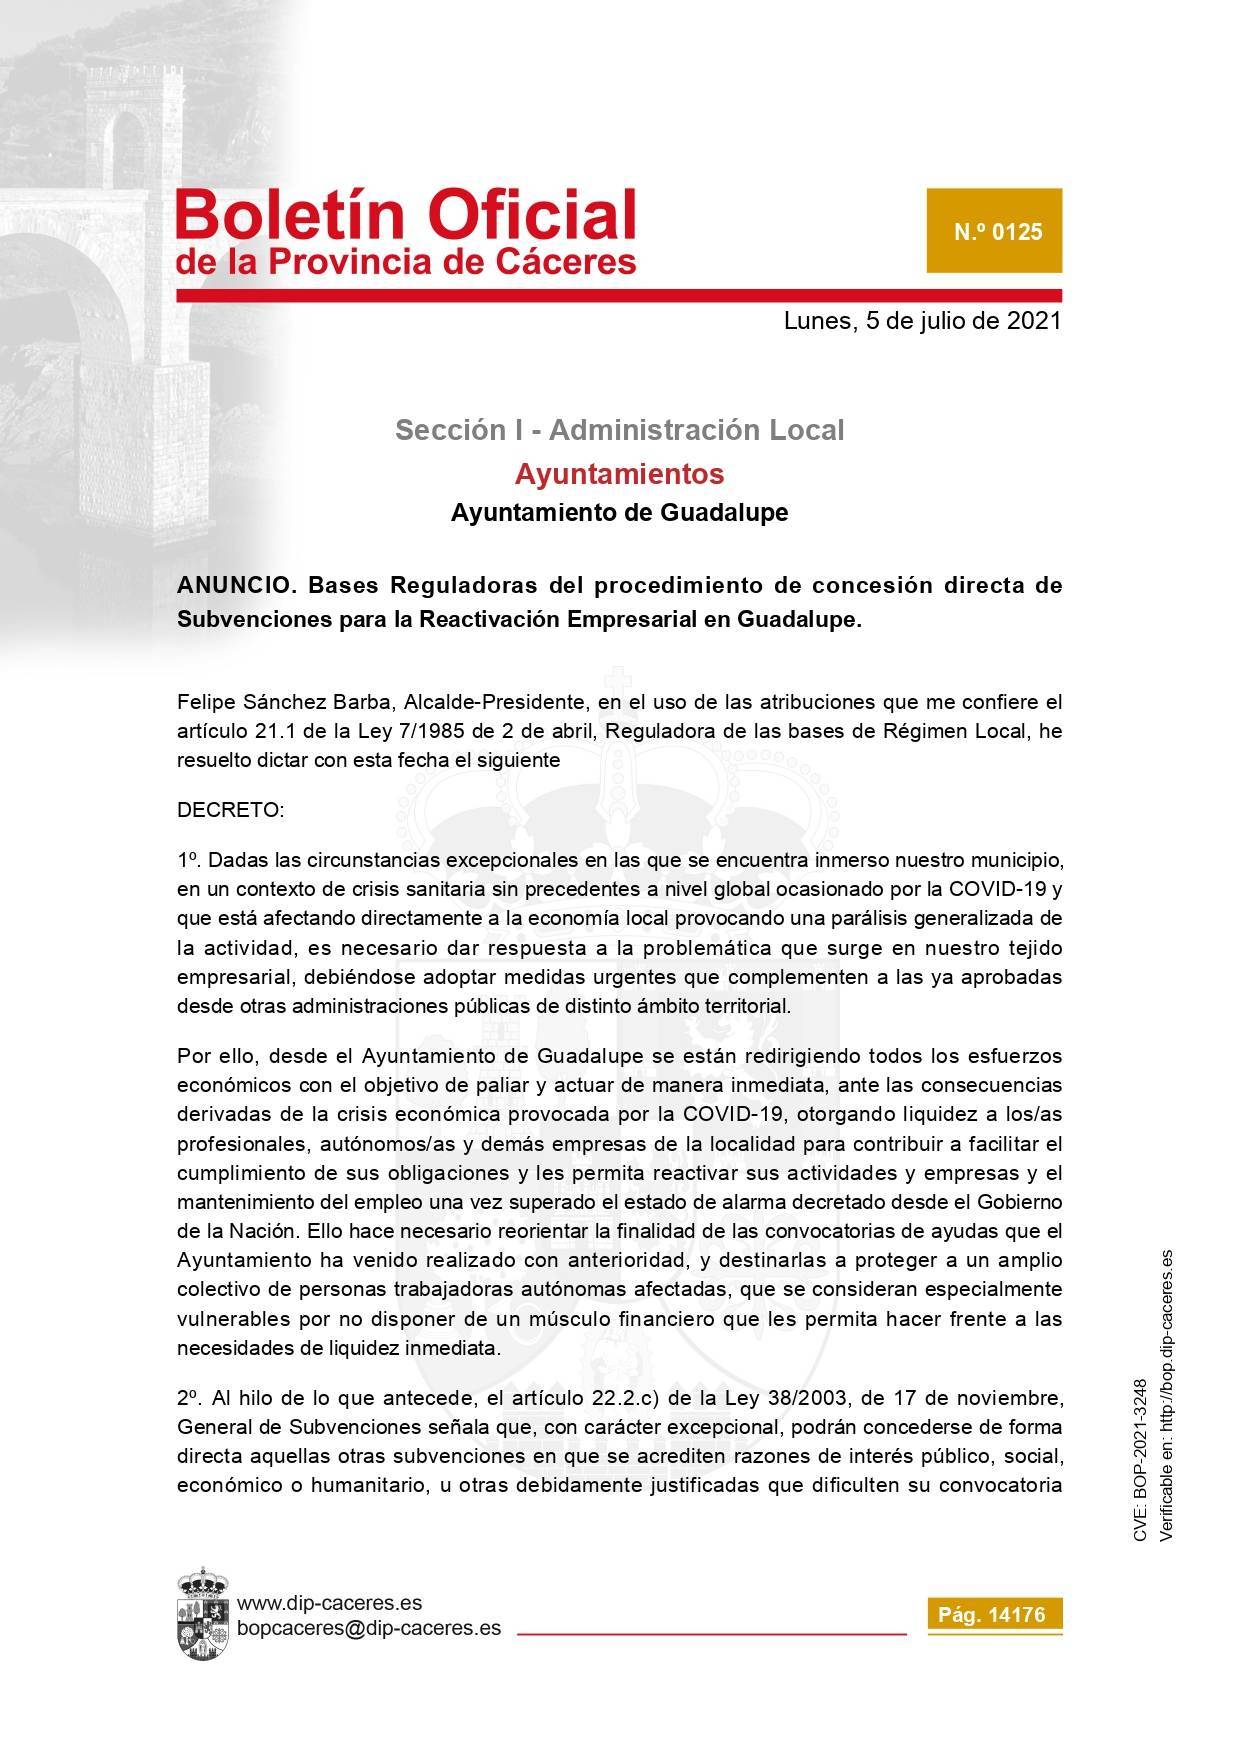 Concesión de subvenciones para la reactivación empresarial (2021) - Guadalupe (Cáceres) 1